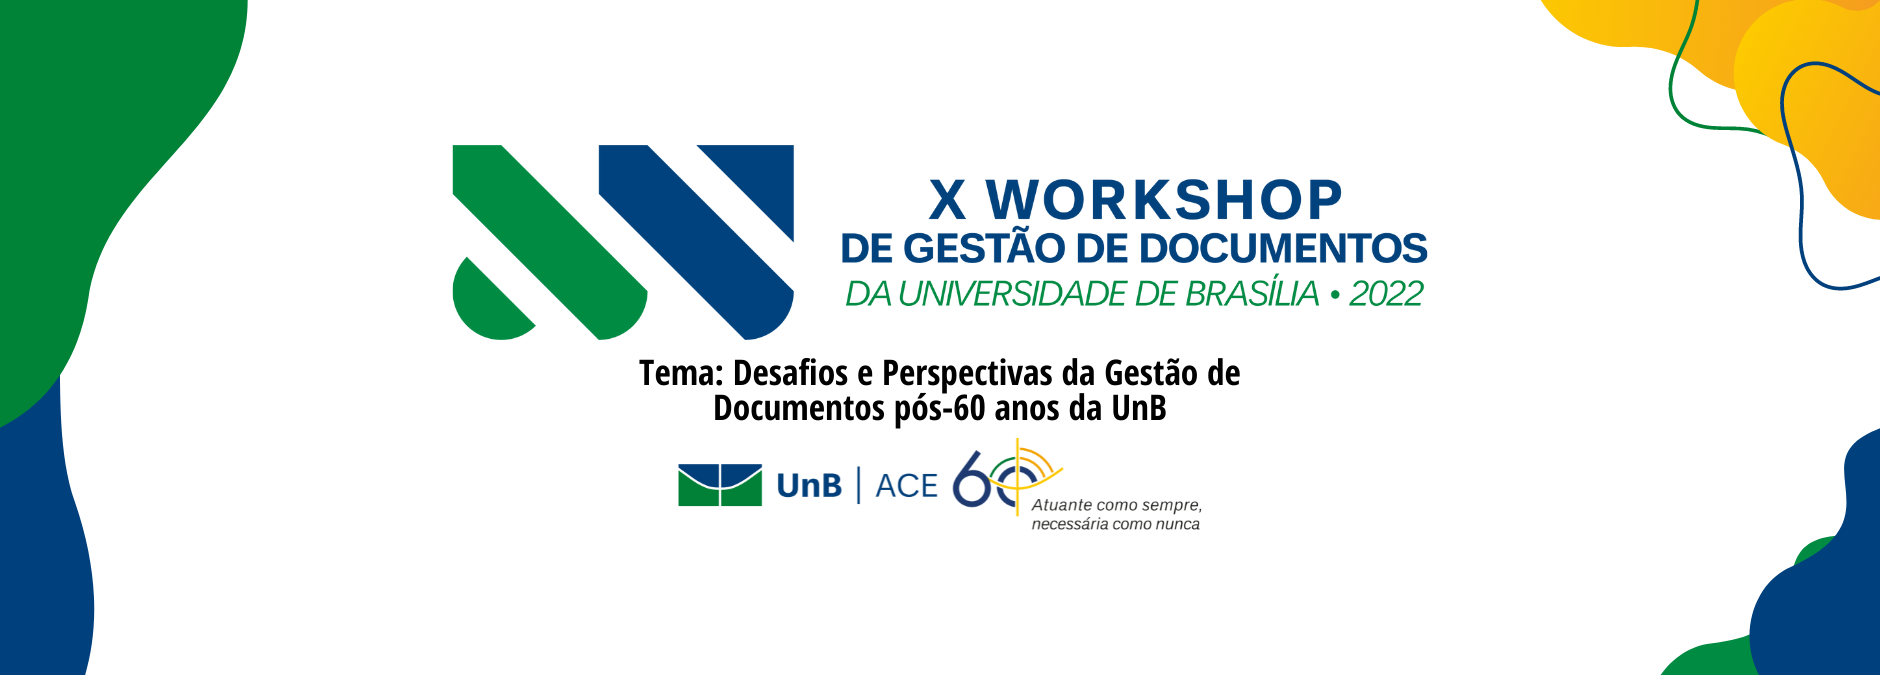 X Workshop de Gestão de Documentos da UnB